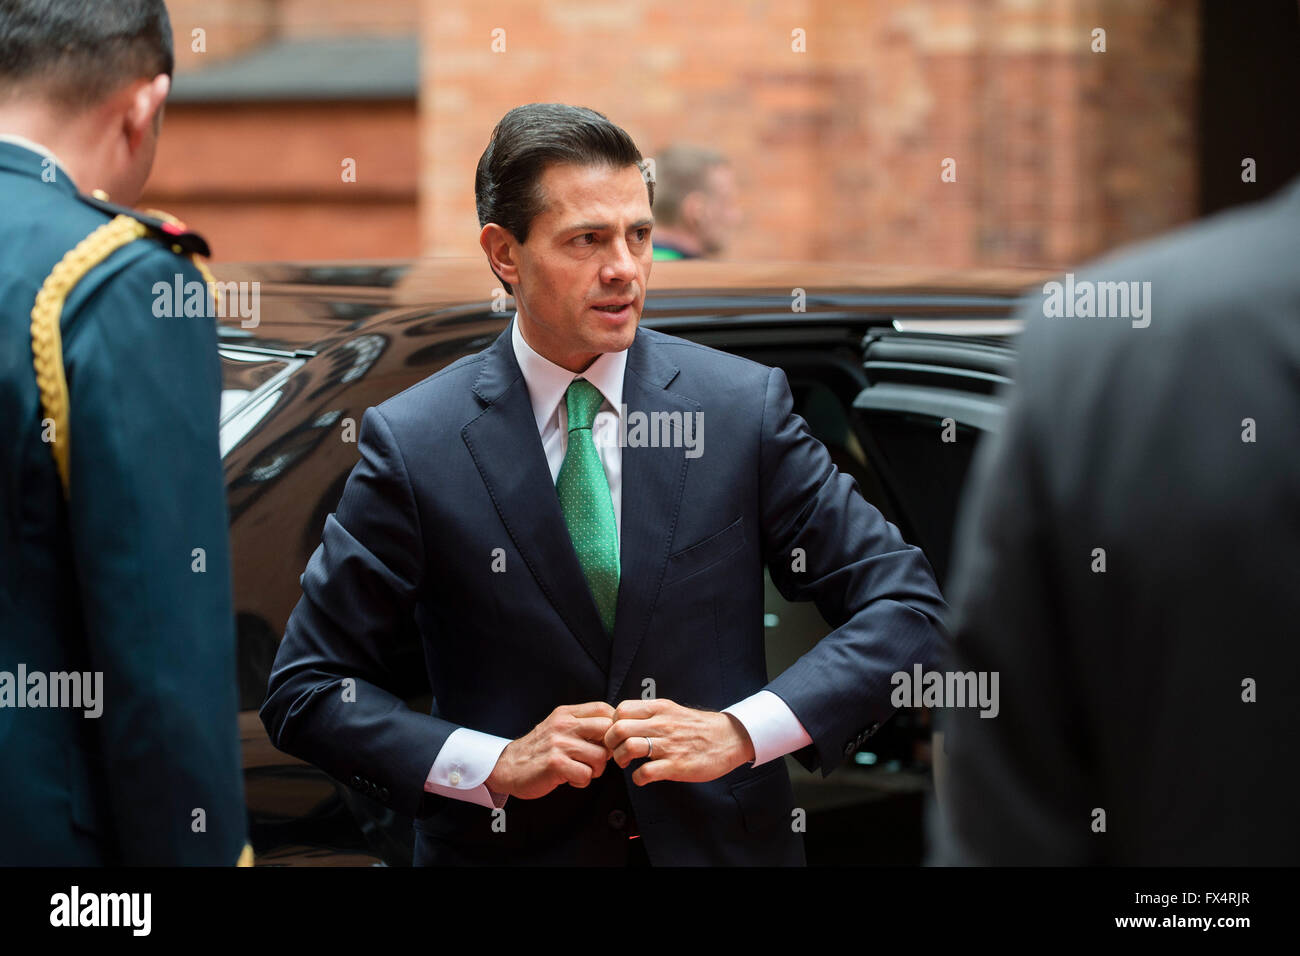 Berlino, Germania. Xi Apr, 2016. Il Presidente messicano Enrique Peña Nieto arriva per incontrare il sindaco di Berlino presso il Municipio di Berlino, Germania, 11 aprile 2016. Foto: GREGOR FISCHER/dpa/Alamy Live News Foto Stock